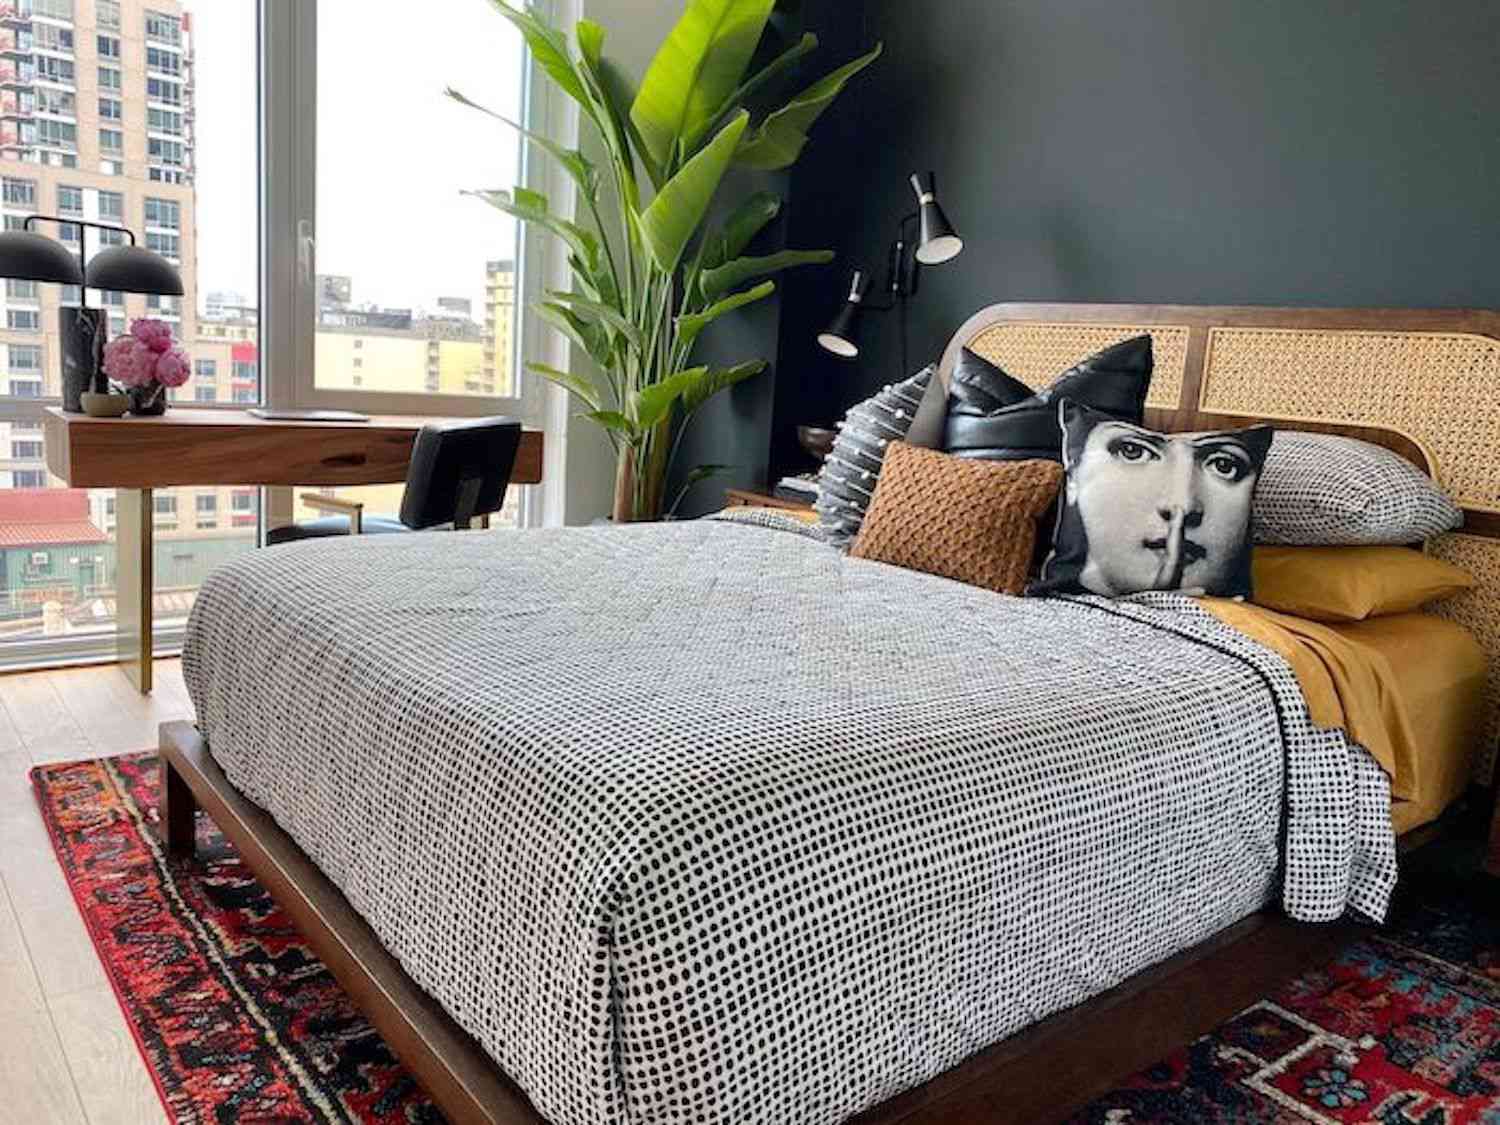 Modernes Schlafzimmer mit geflochtenem Kopfteil, schwarz-weiß gepunktete Bettdecke, rot gemusterter Teppich, große Pflanze in der Ecke